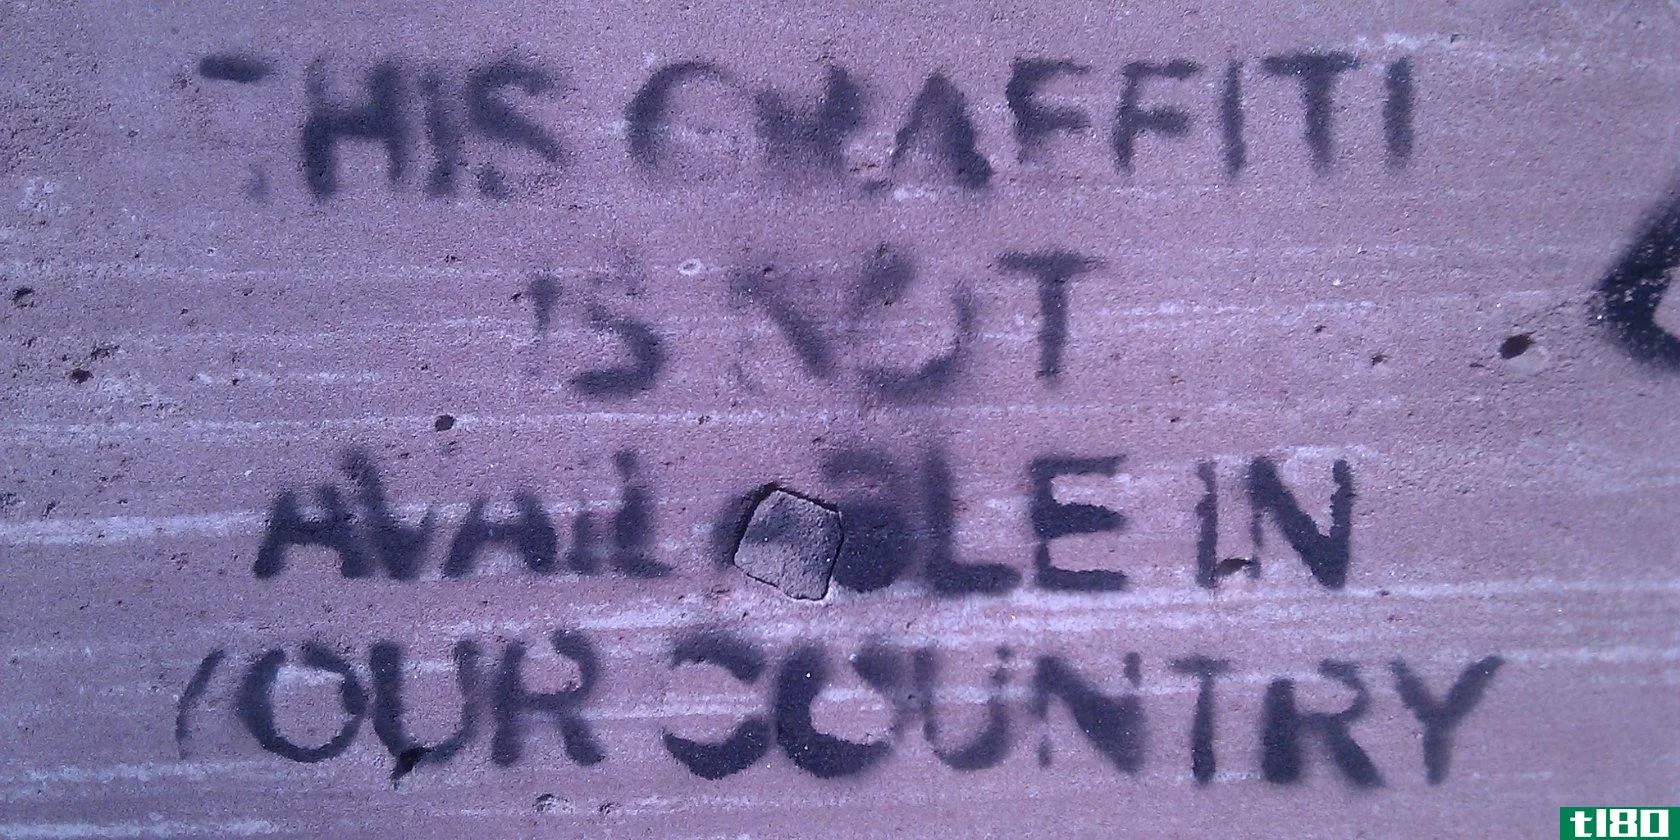 graffiti-censorship